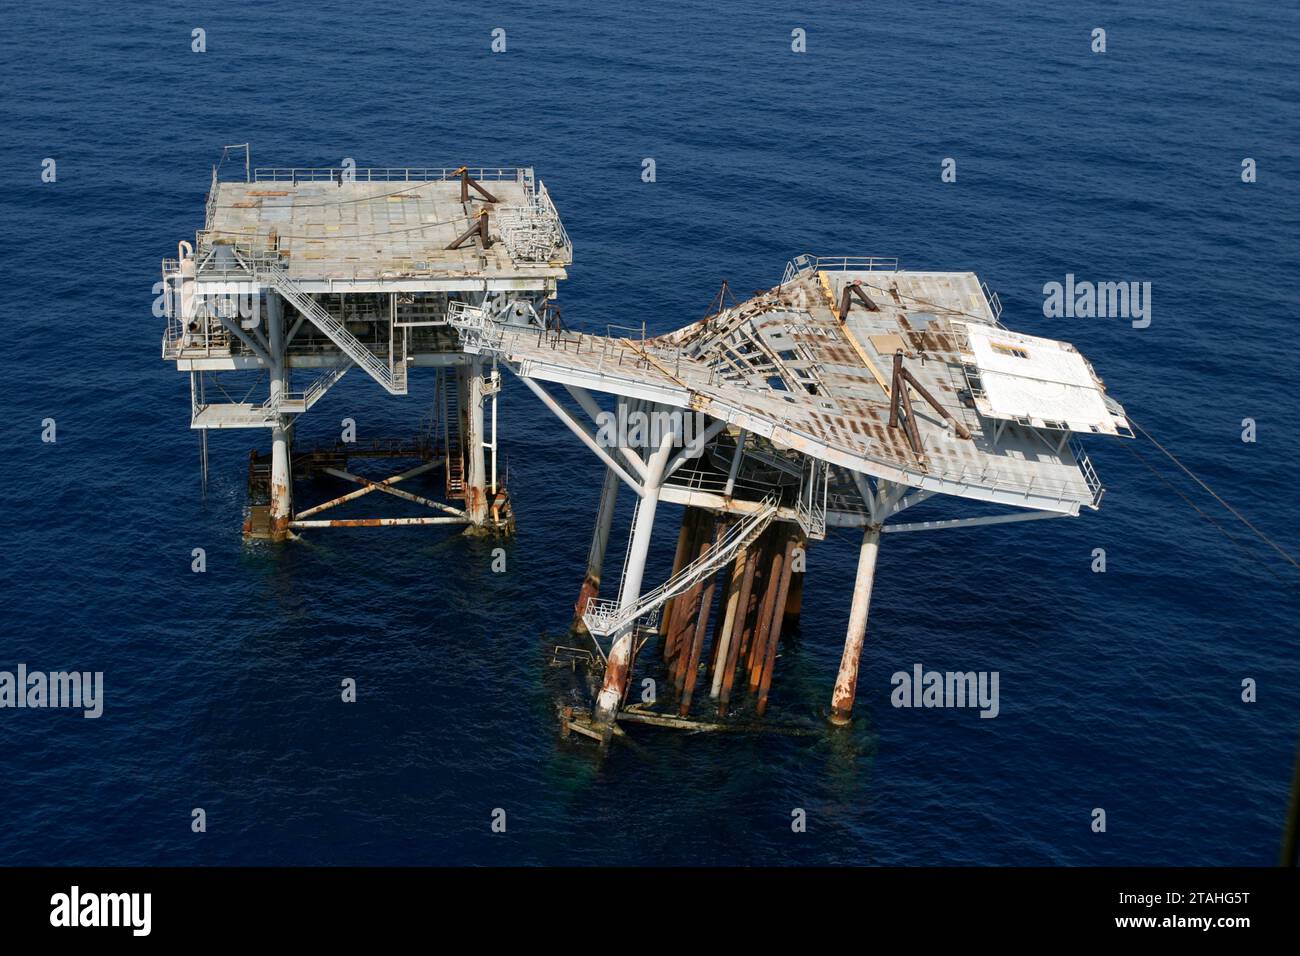 Oil platform after hurricane devestation Stock Photo